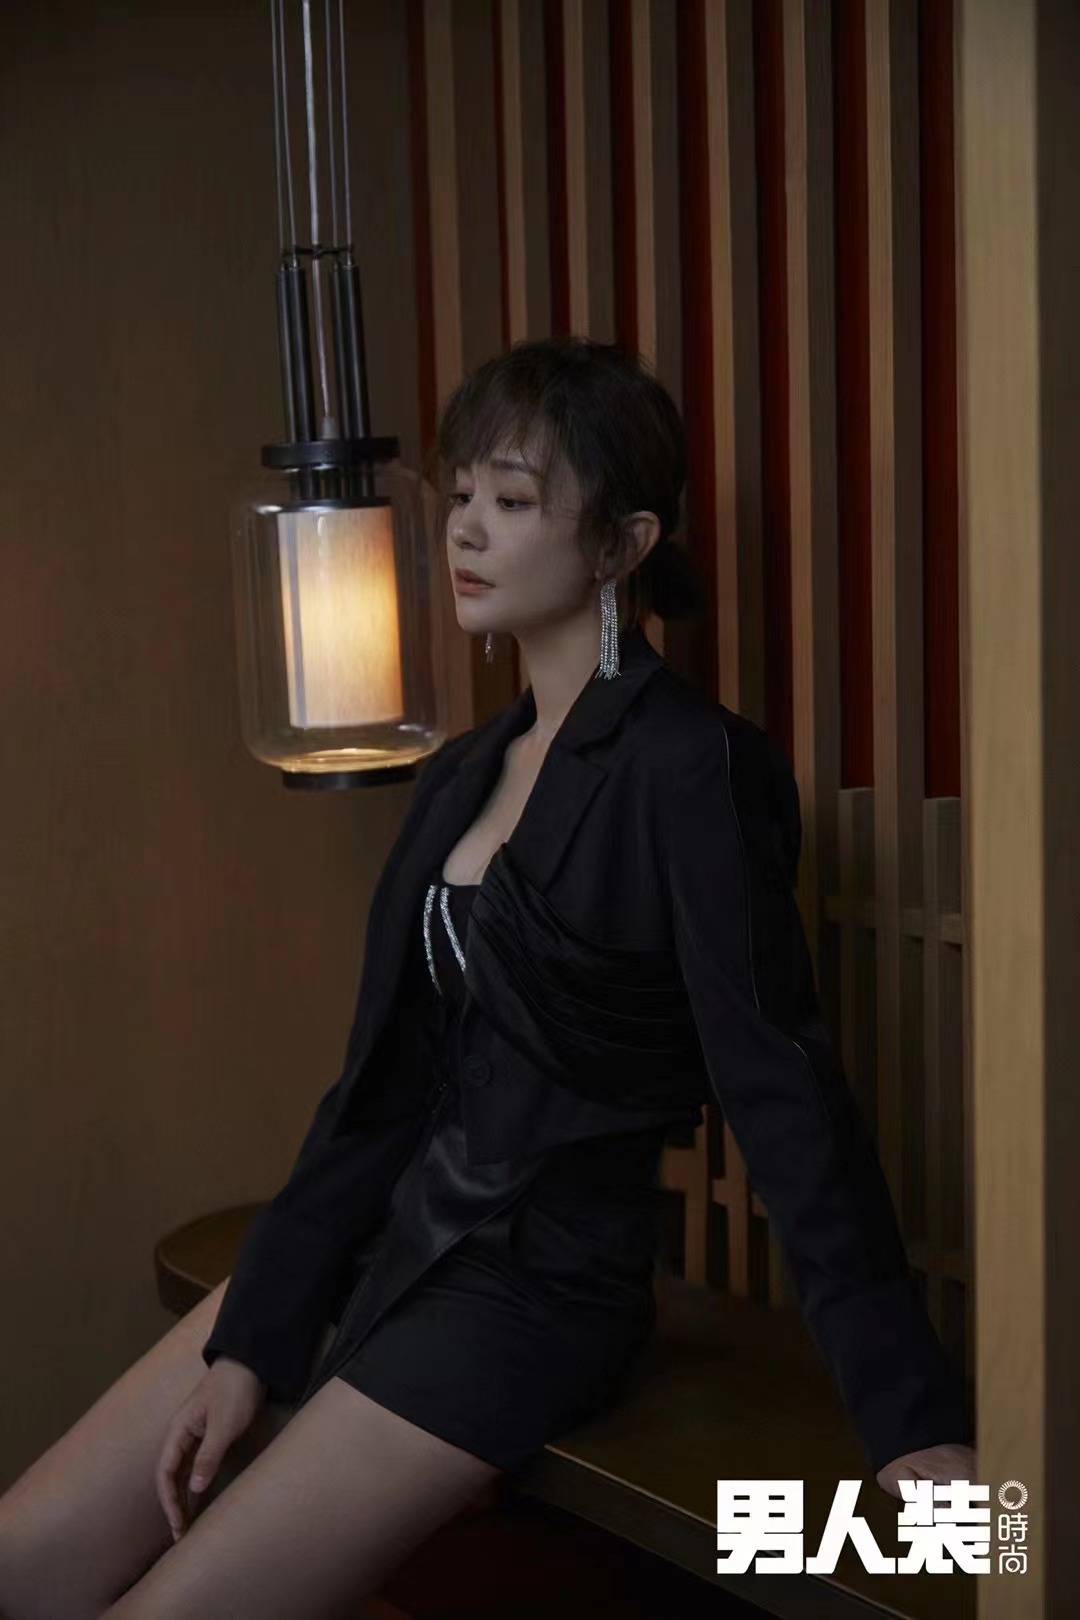 搜狐娱乐讯 9月21日,海陆一组绝美大片曝光,她身穿抹胸黑裙秀性感身材